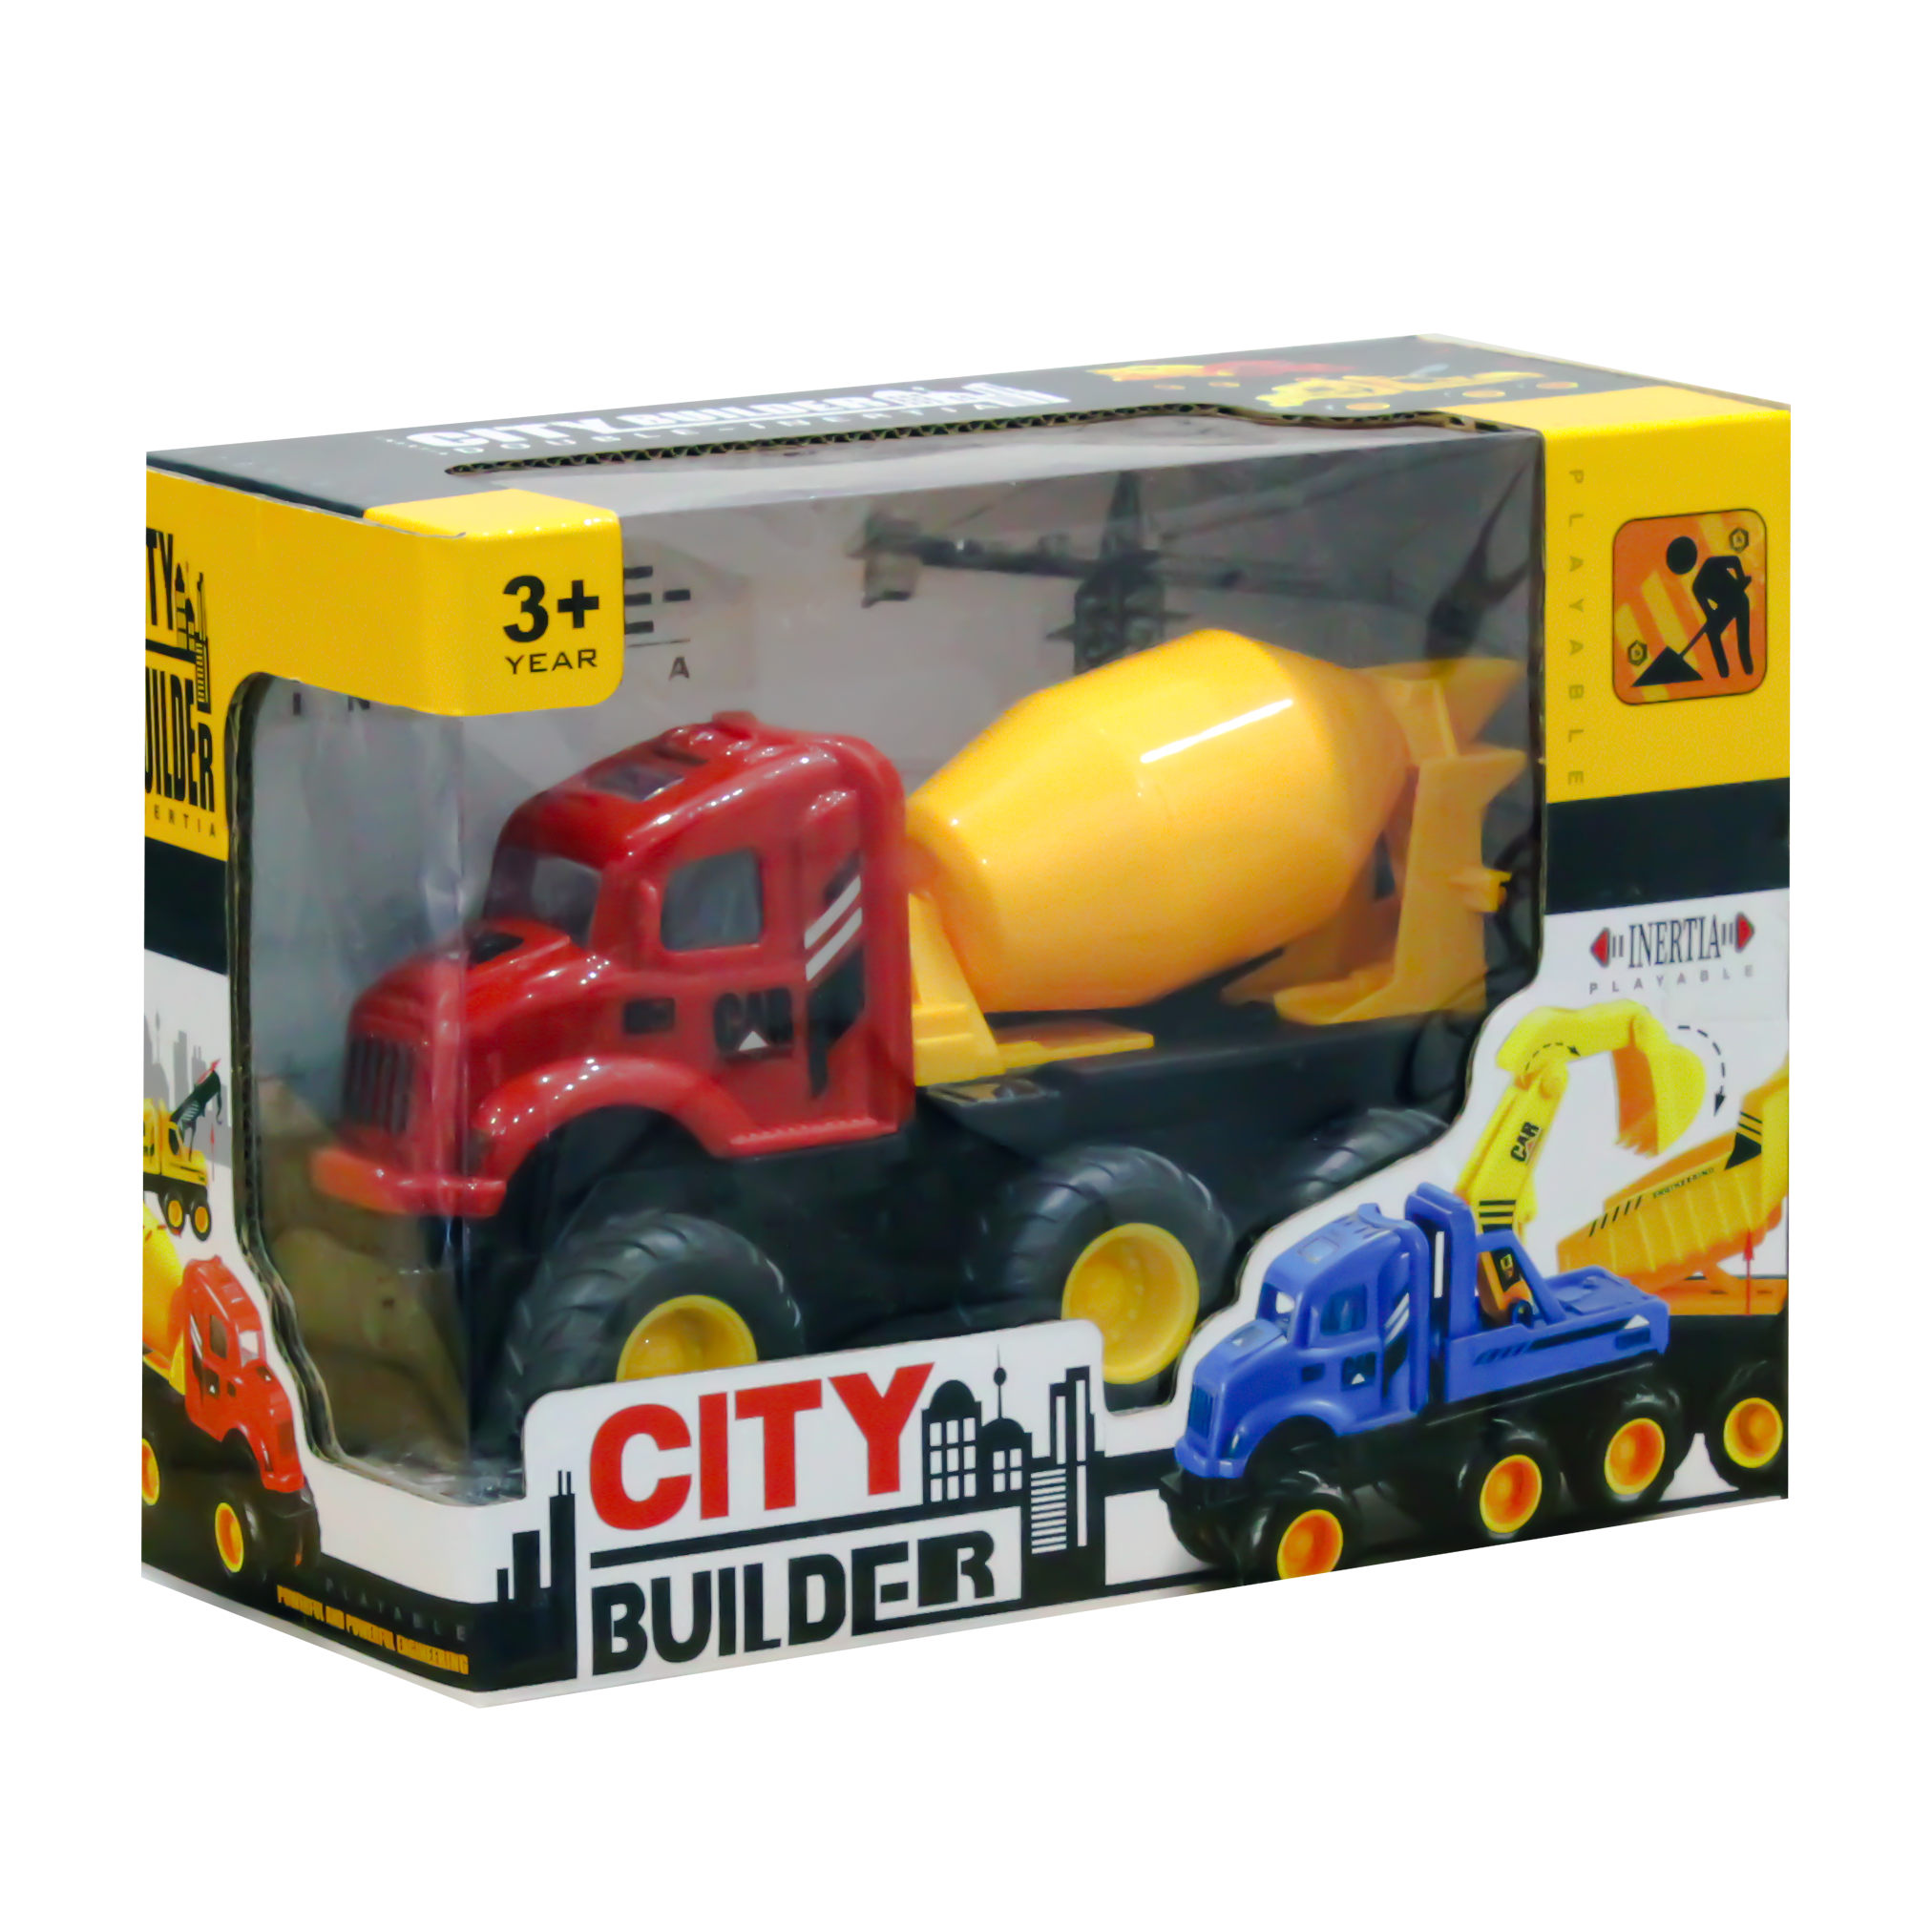 City Builder Double-Inertia Cement Mixer Truck Toy